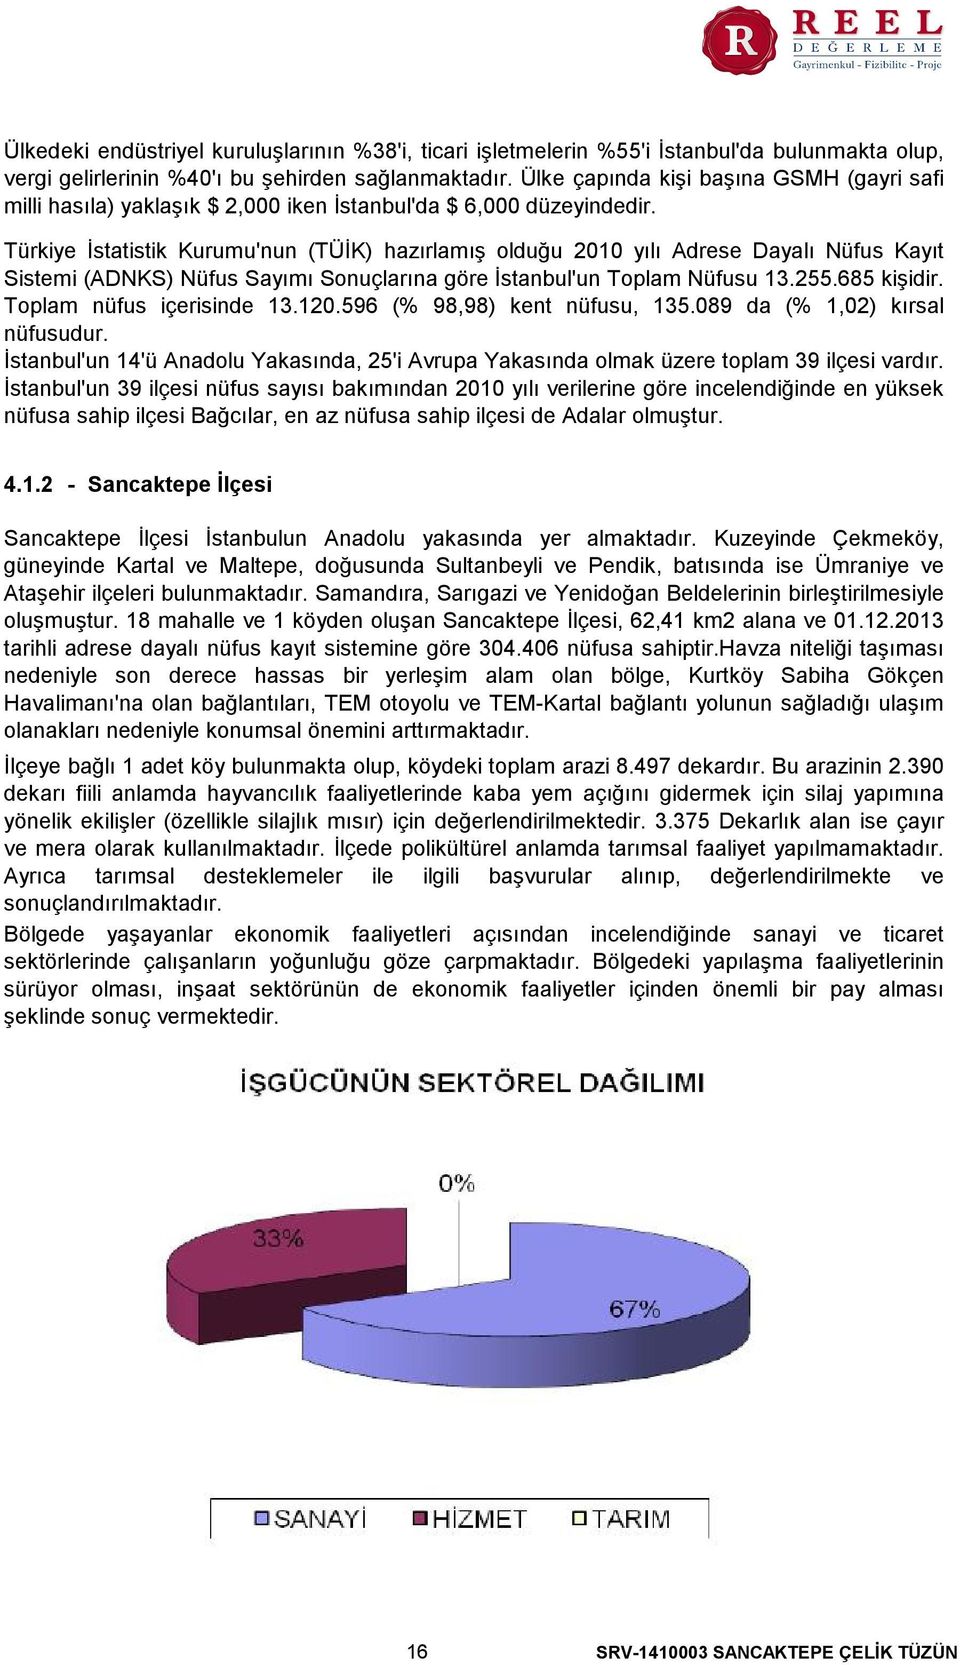 Türkiye İstatistik Kurumu'nun (TÜİK) hazırlamış olduğu 2010 yılı Adrese Dayalı Nüfus Kayıt Sistemi (ADNKS) Nüfus Sayımı Sonuçlarına göre İstanbul'un Toplam Nüfusu 13.255.685 kişidir.